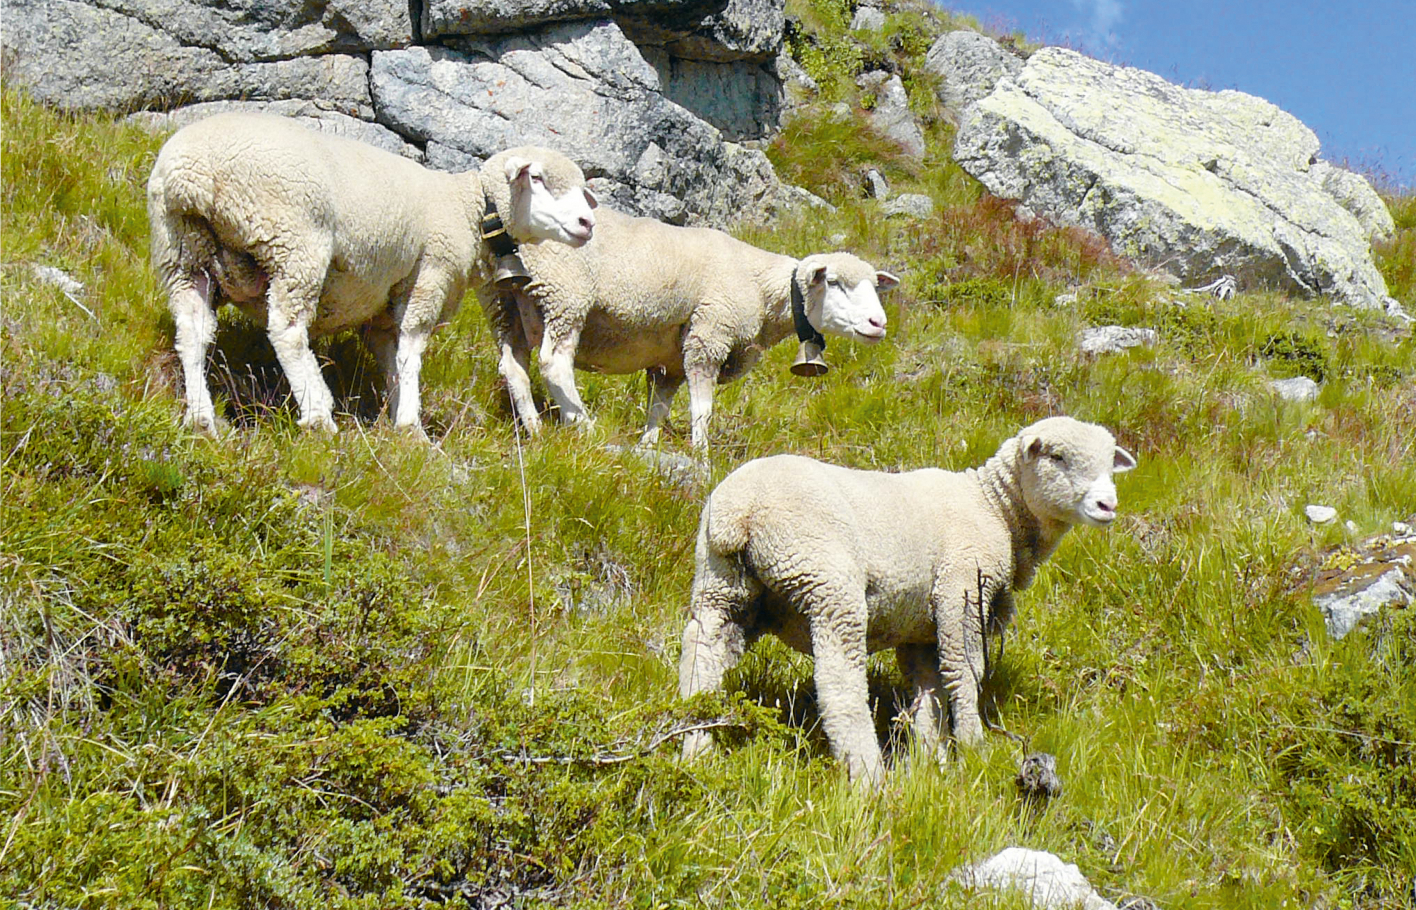 Vier weisse Schafe auf einem Hang die von einer Wiese bedeckt ist und grossen Felsbrocken